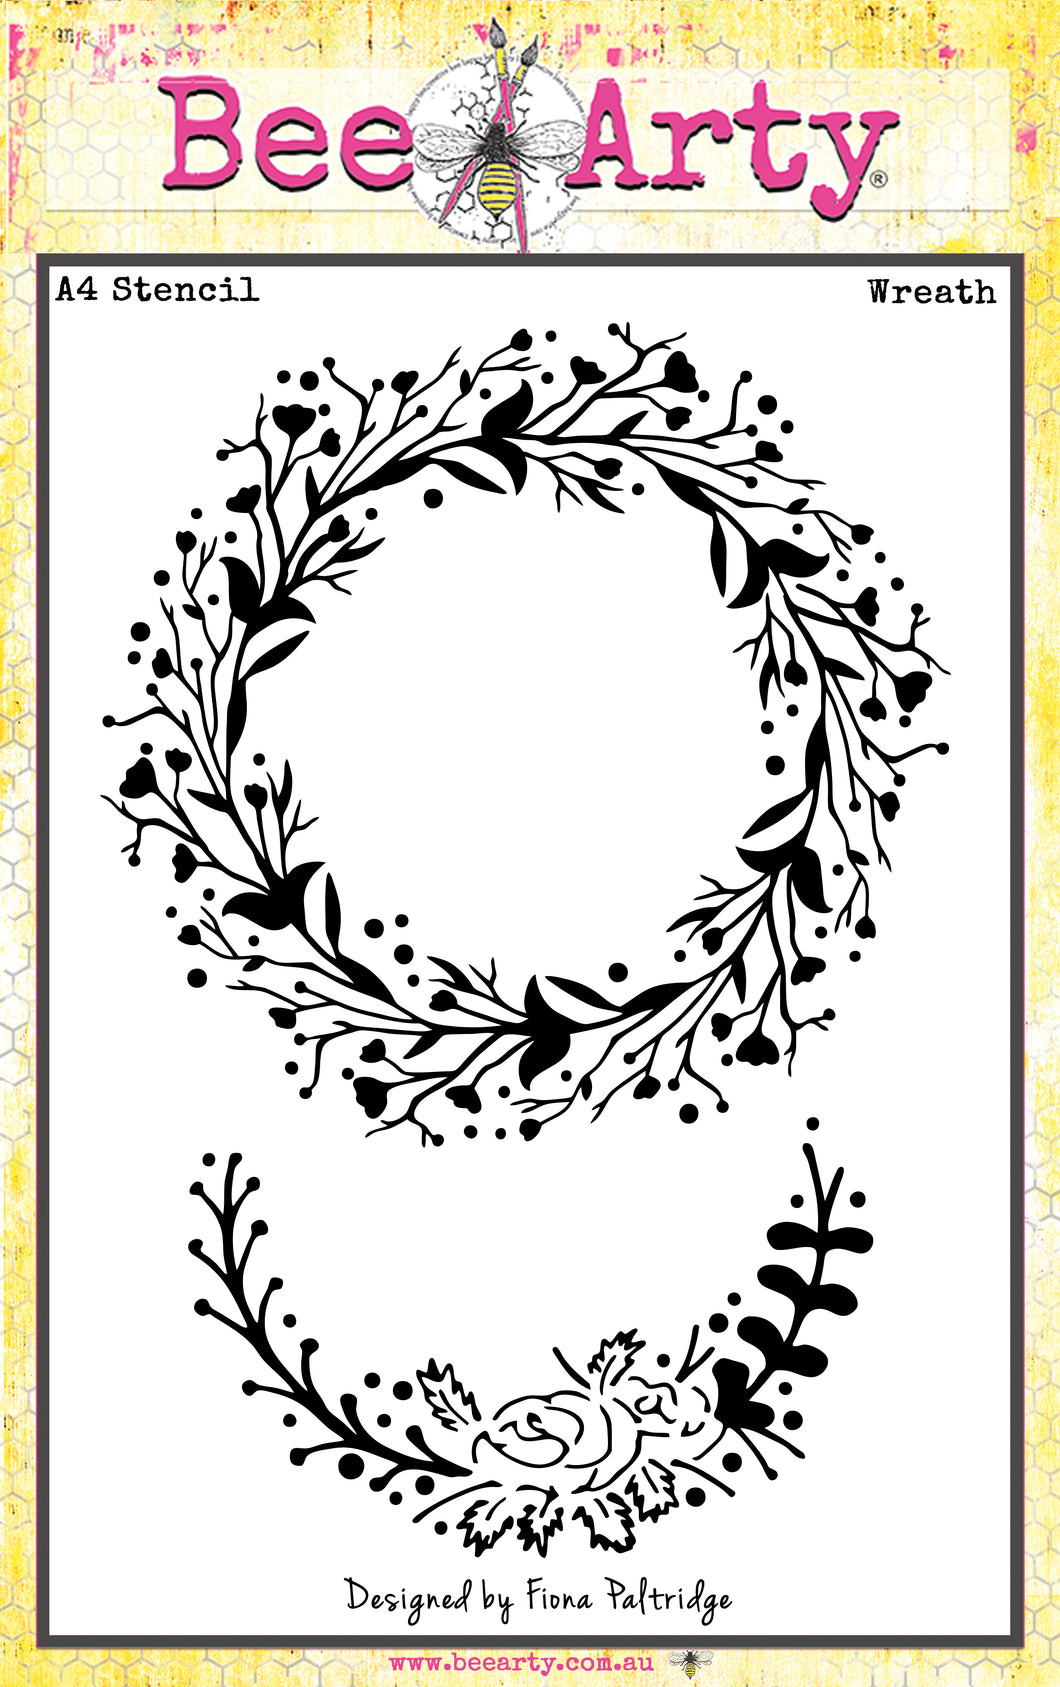 Wreath- A4 Stencil